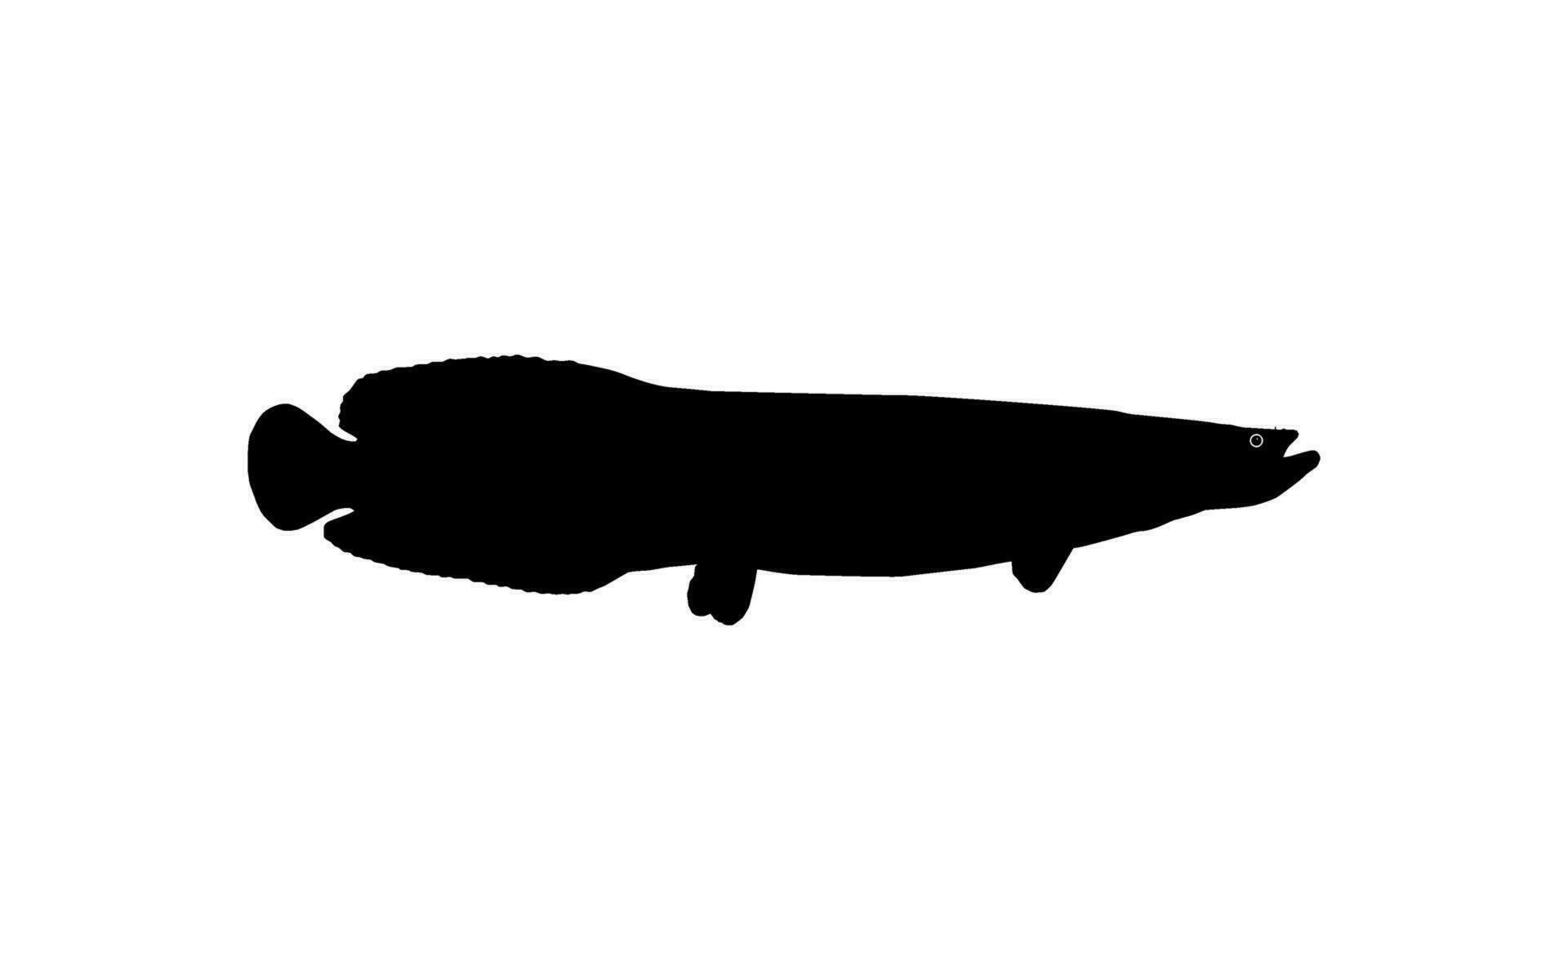 silhouette de le poisson arapaïma, ou pirarucu, ou paiche, pour icône, symbole, pictogramme, art illustration, logo taper, site Internet ou graphique conception élément. vecteur illustration